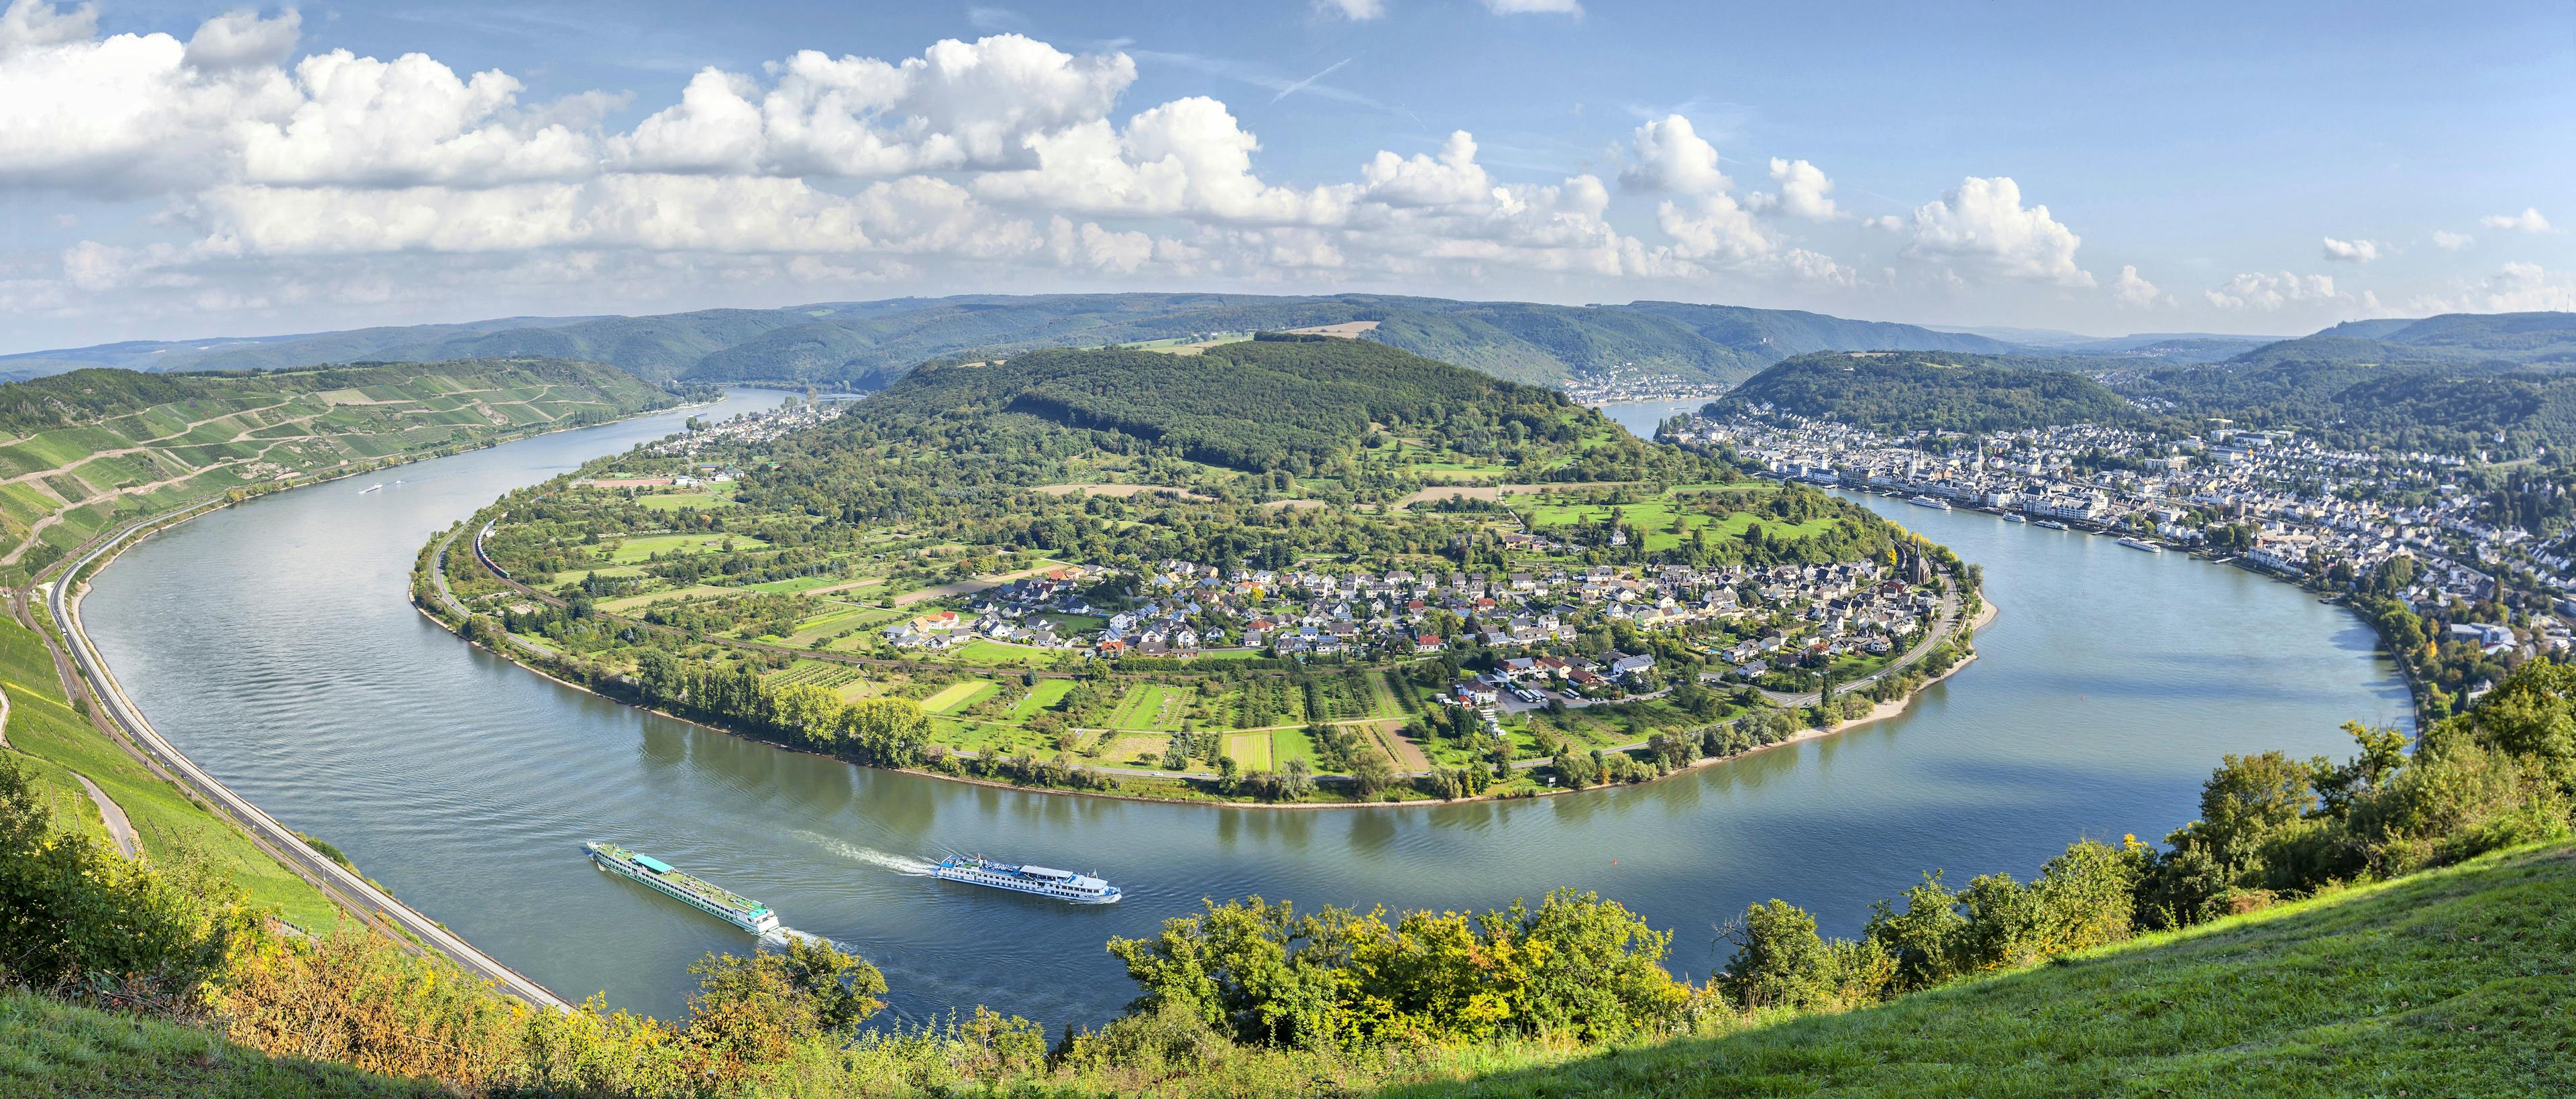 Beeindruckend: die Rheinschleife Boppard. © Thurgau Travel